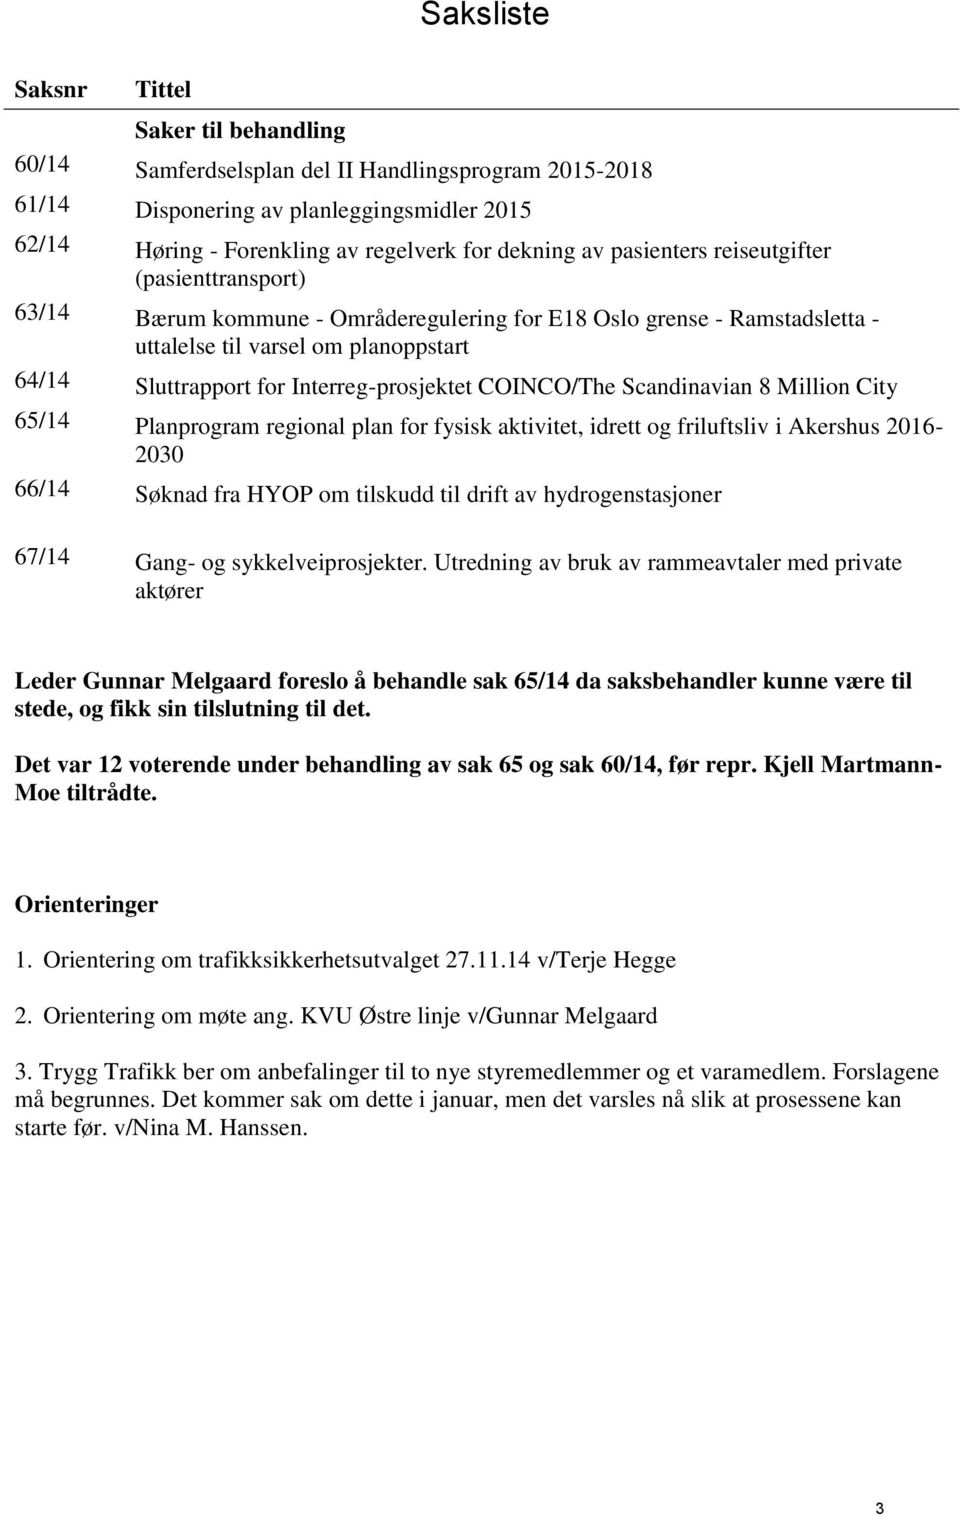 Interreg-prosjektet COINCO/The Scandinavian 8 Million City 65/14 Planprogram regional plan for fysisk aktivitet, idrett og friluftsliv i Akershus 2016-2030 66/14 Søknad fra HYOP om tilskudd til drift